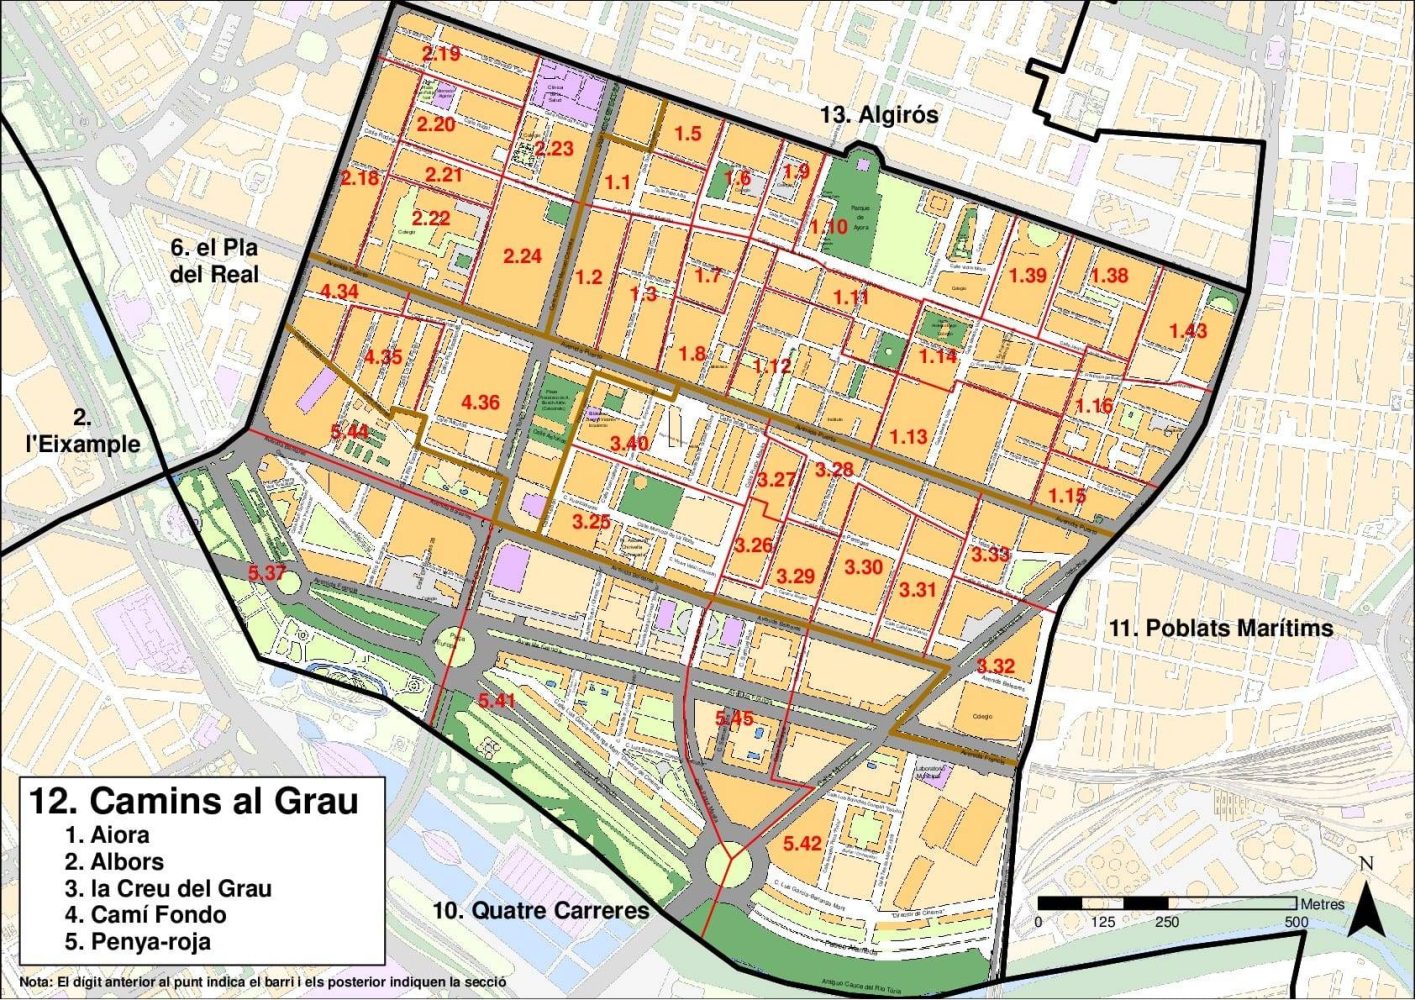 El Grau Neighbourhood in Valencia, Spain